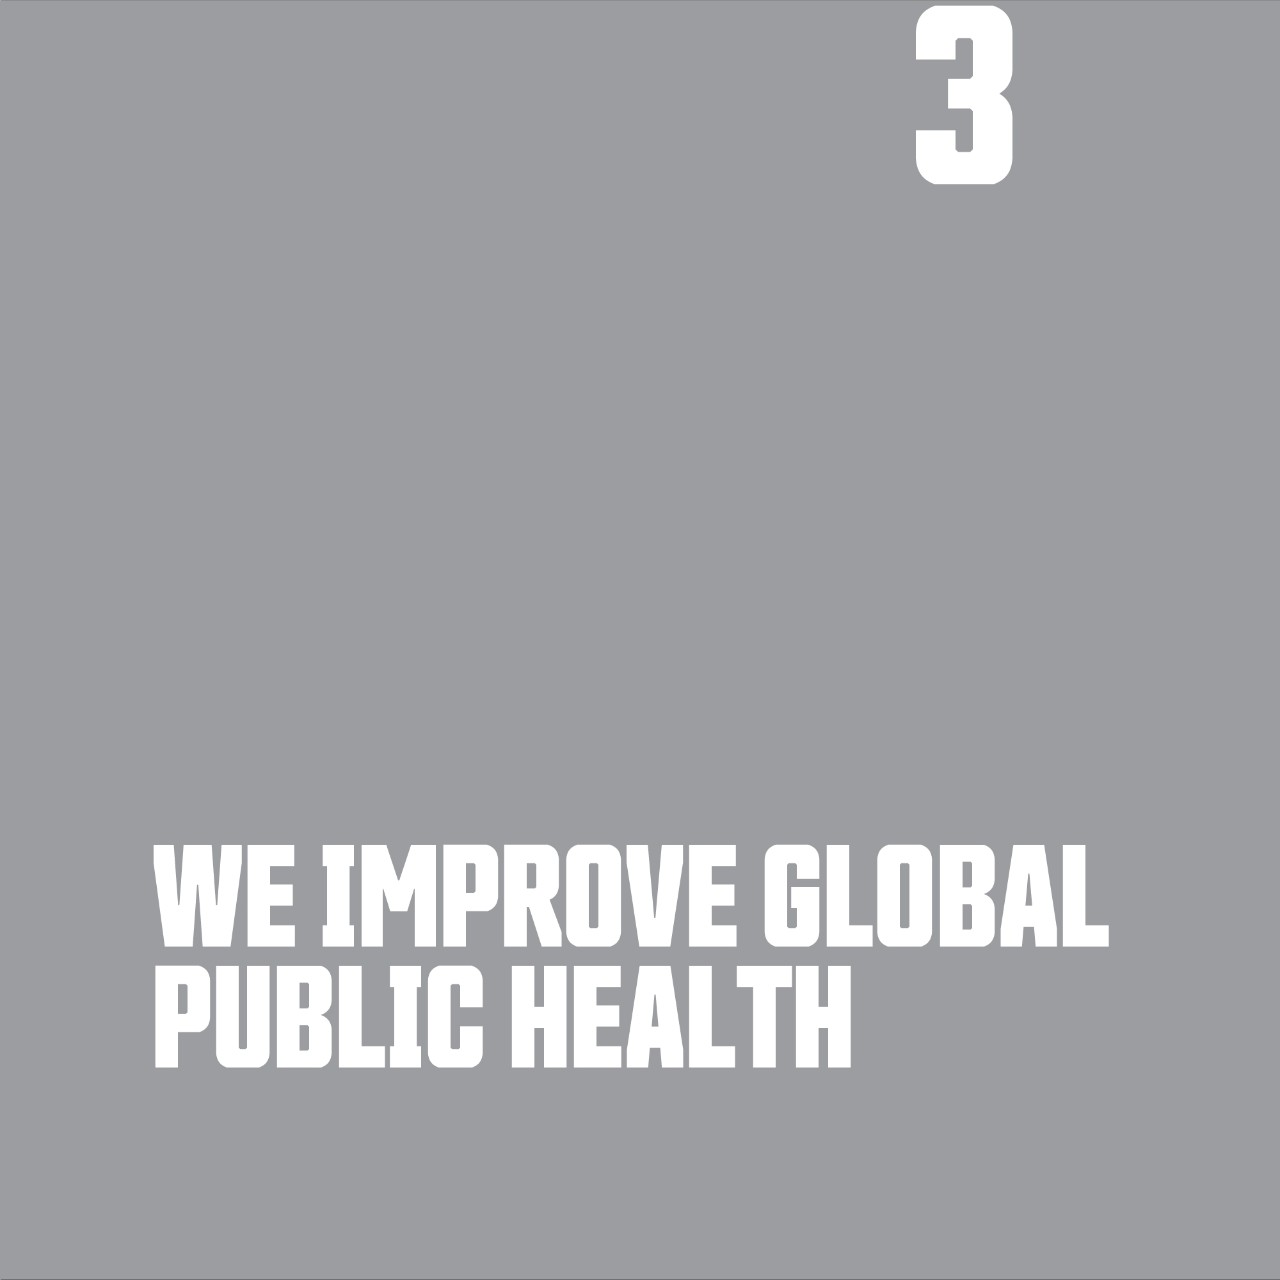 We improve global public health